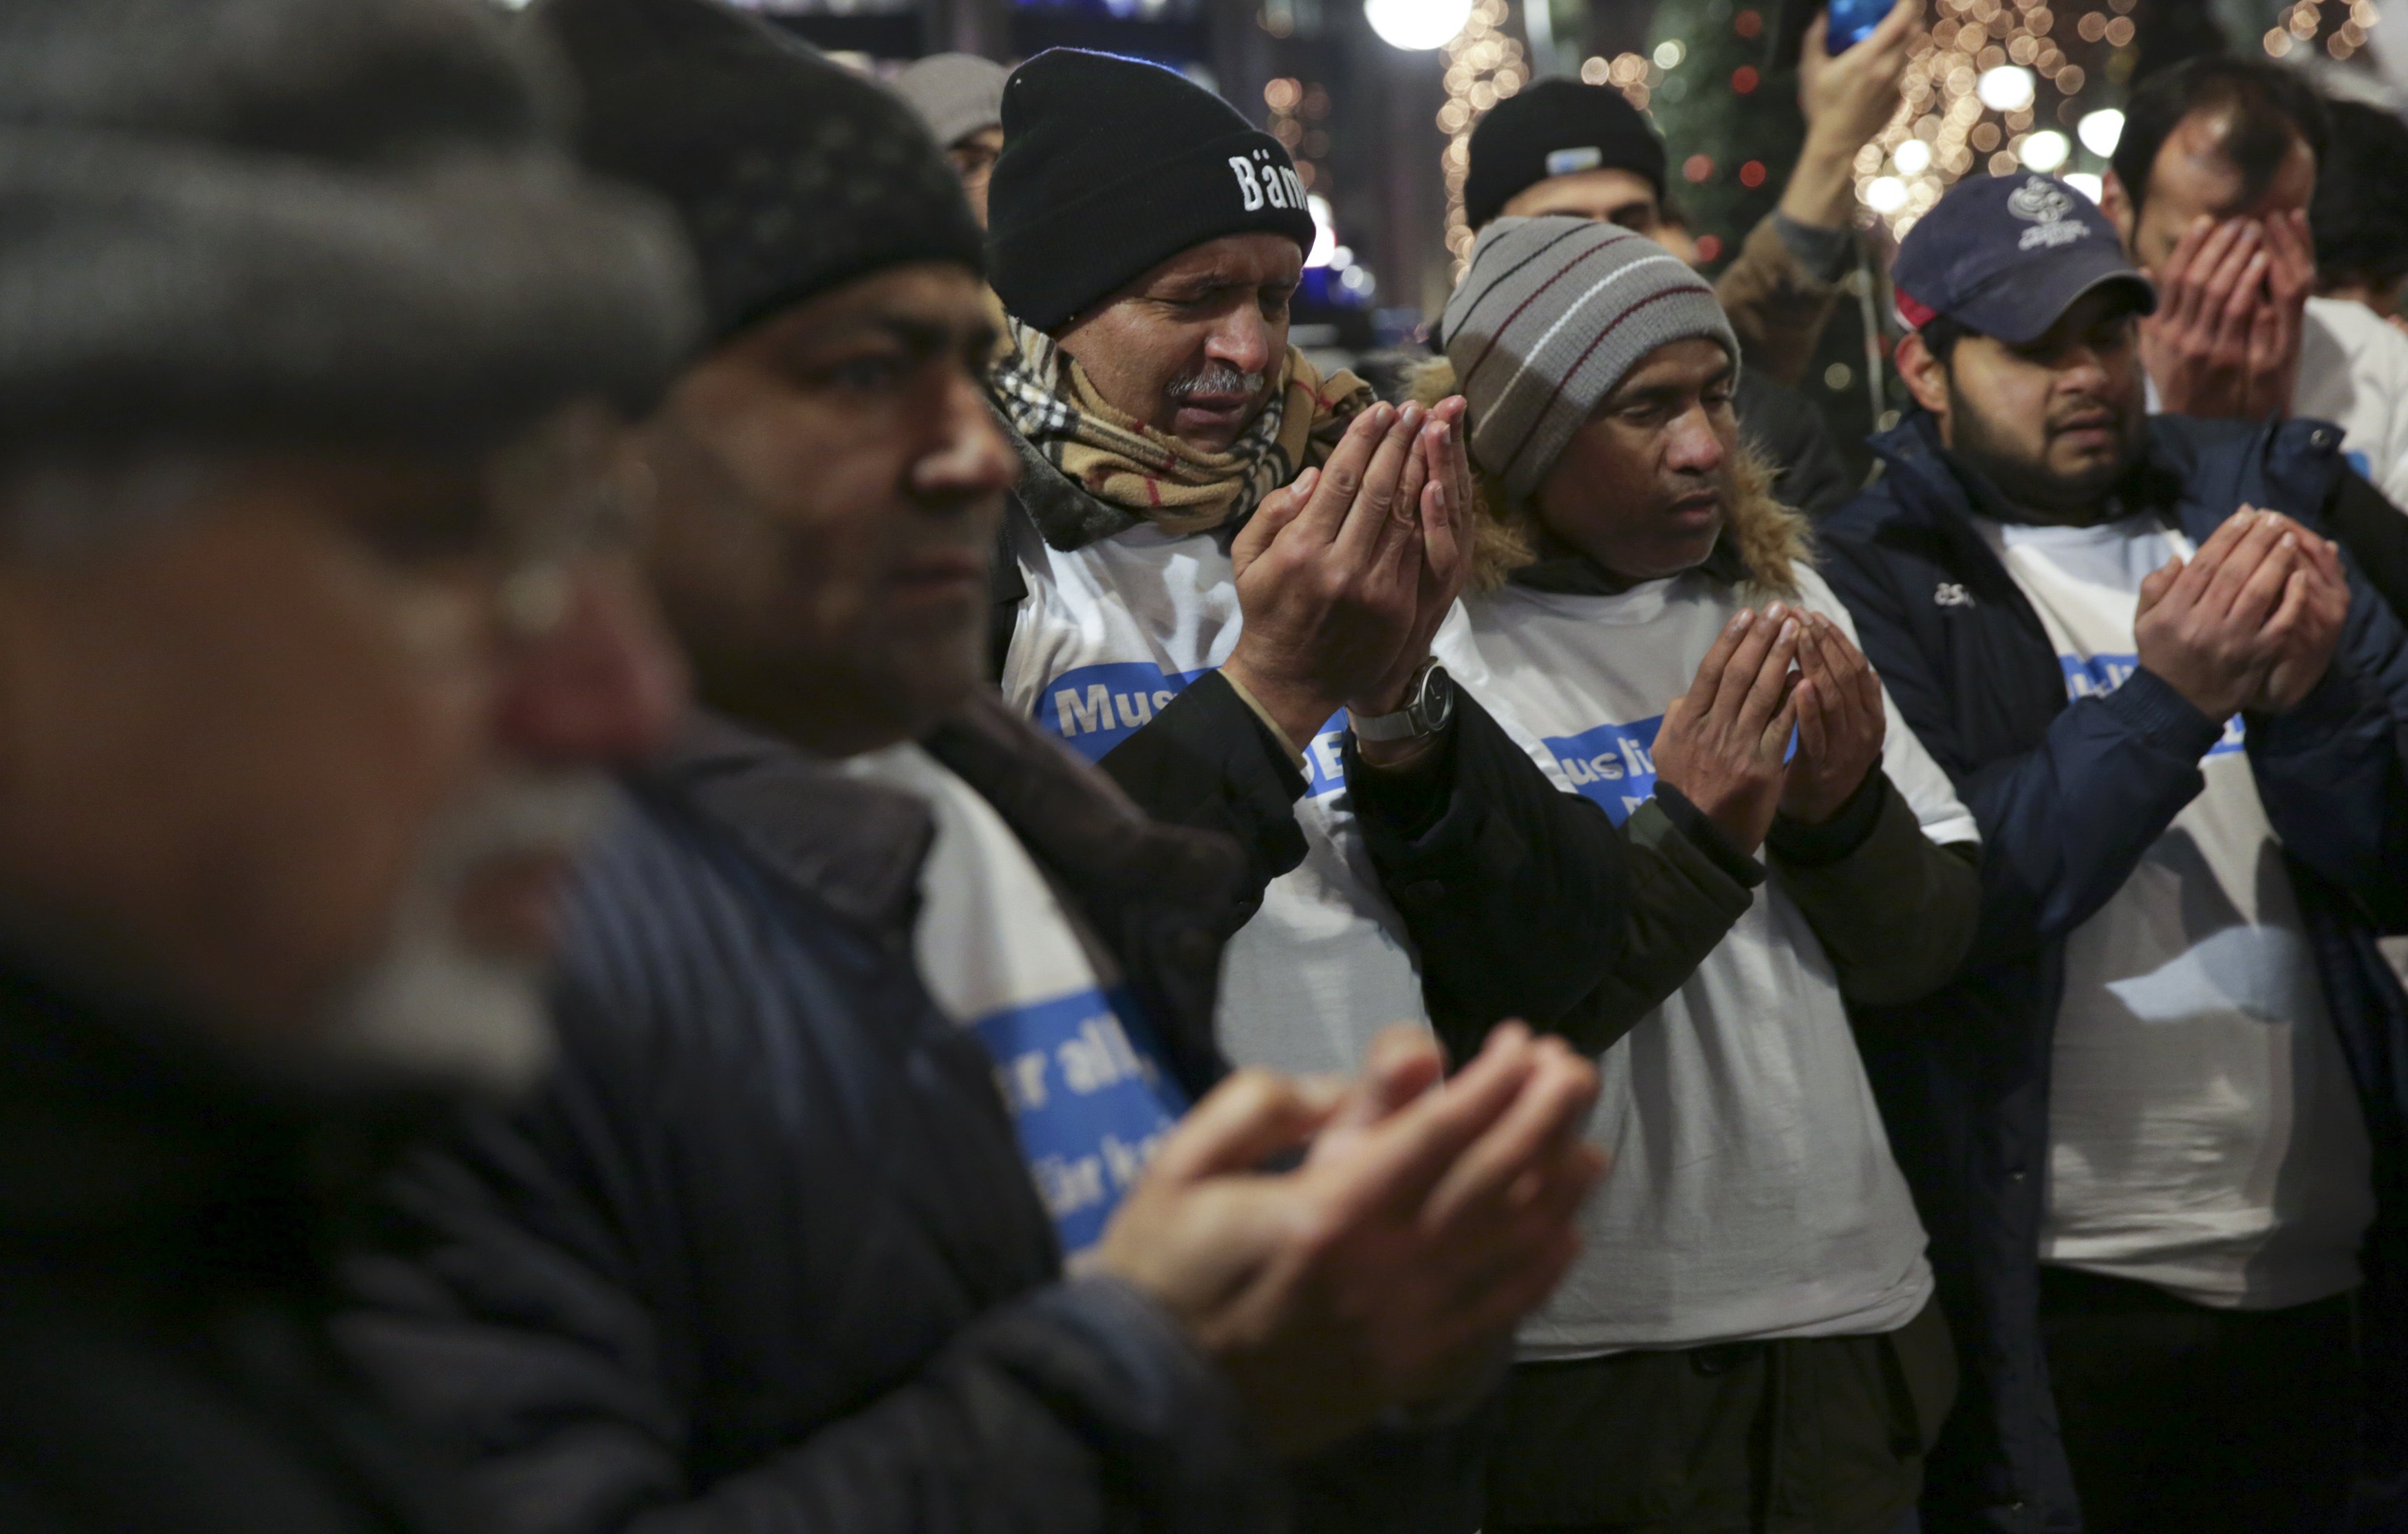 Người Hồi giáo cầu nguyện cho các nạn nhân vụ tấn công bằng xe tải tại chợ Giáng sinh ở Berlin ngày 20-12 - ảnh: Reuters